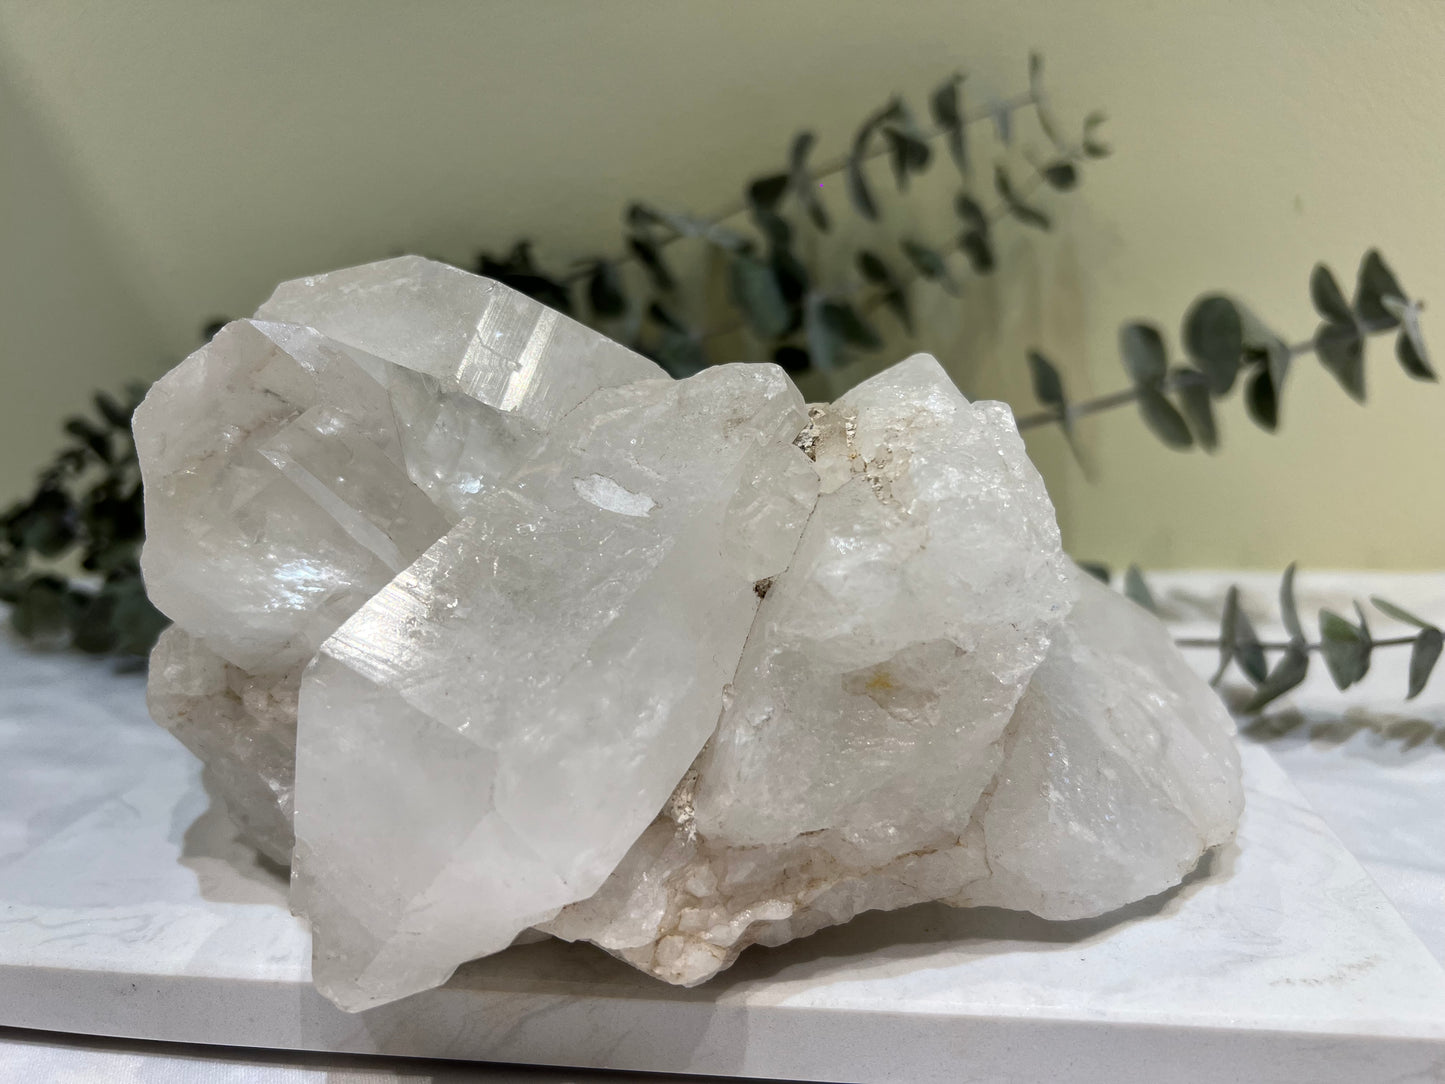 Bergkristal, cluster